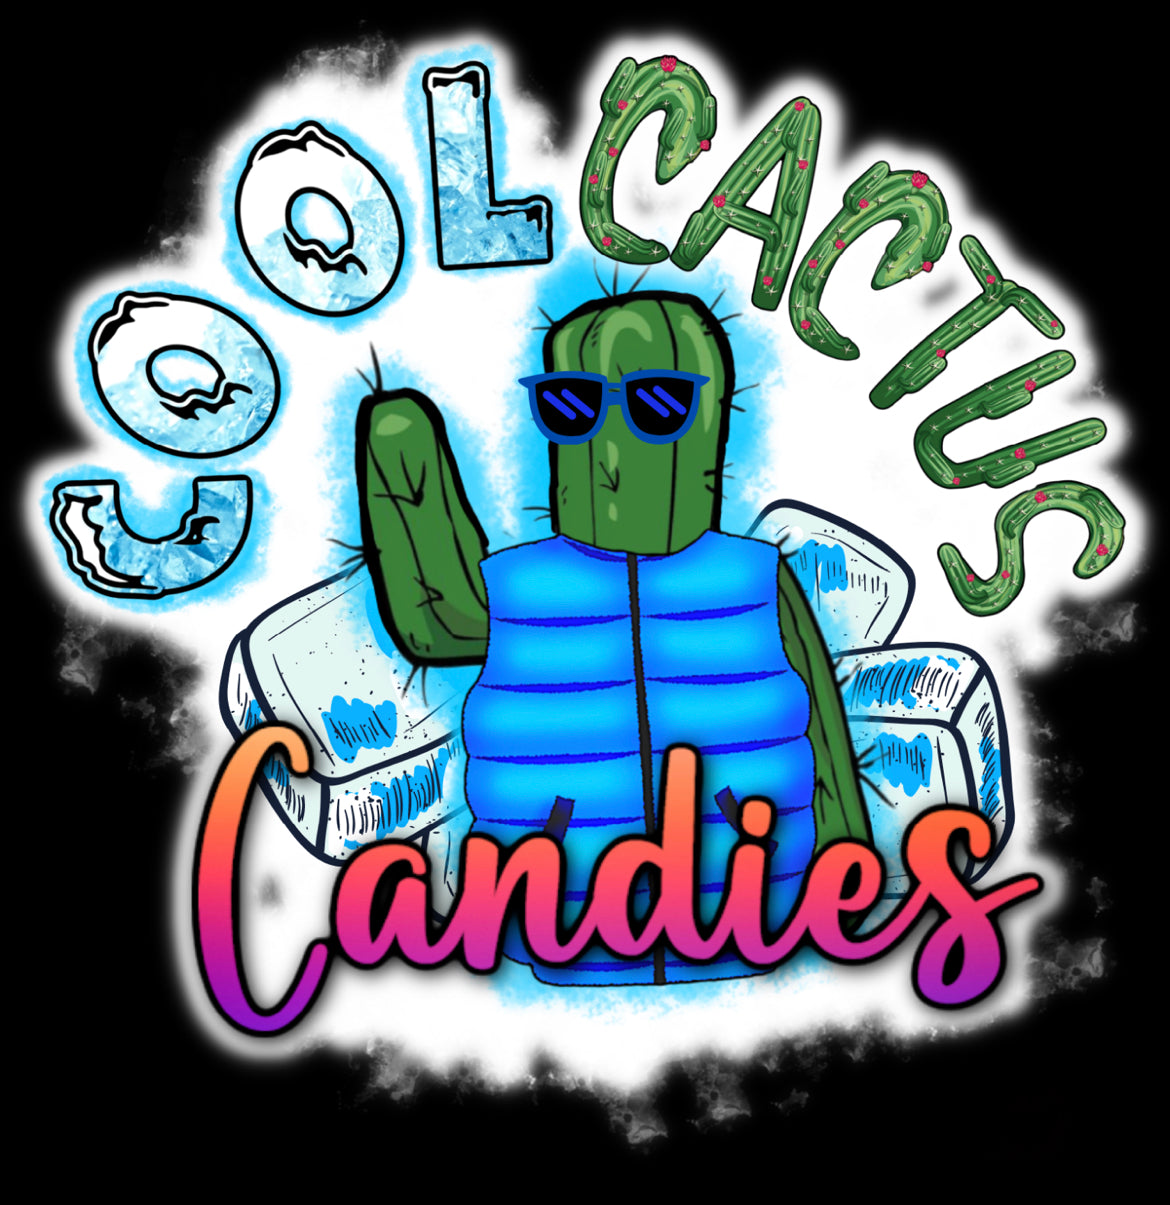 Cool Cactus Candies